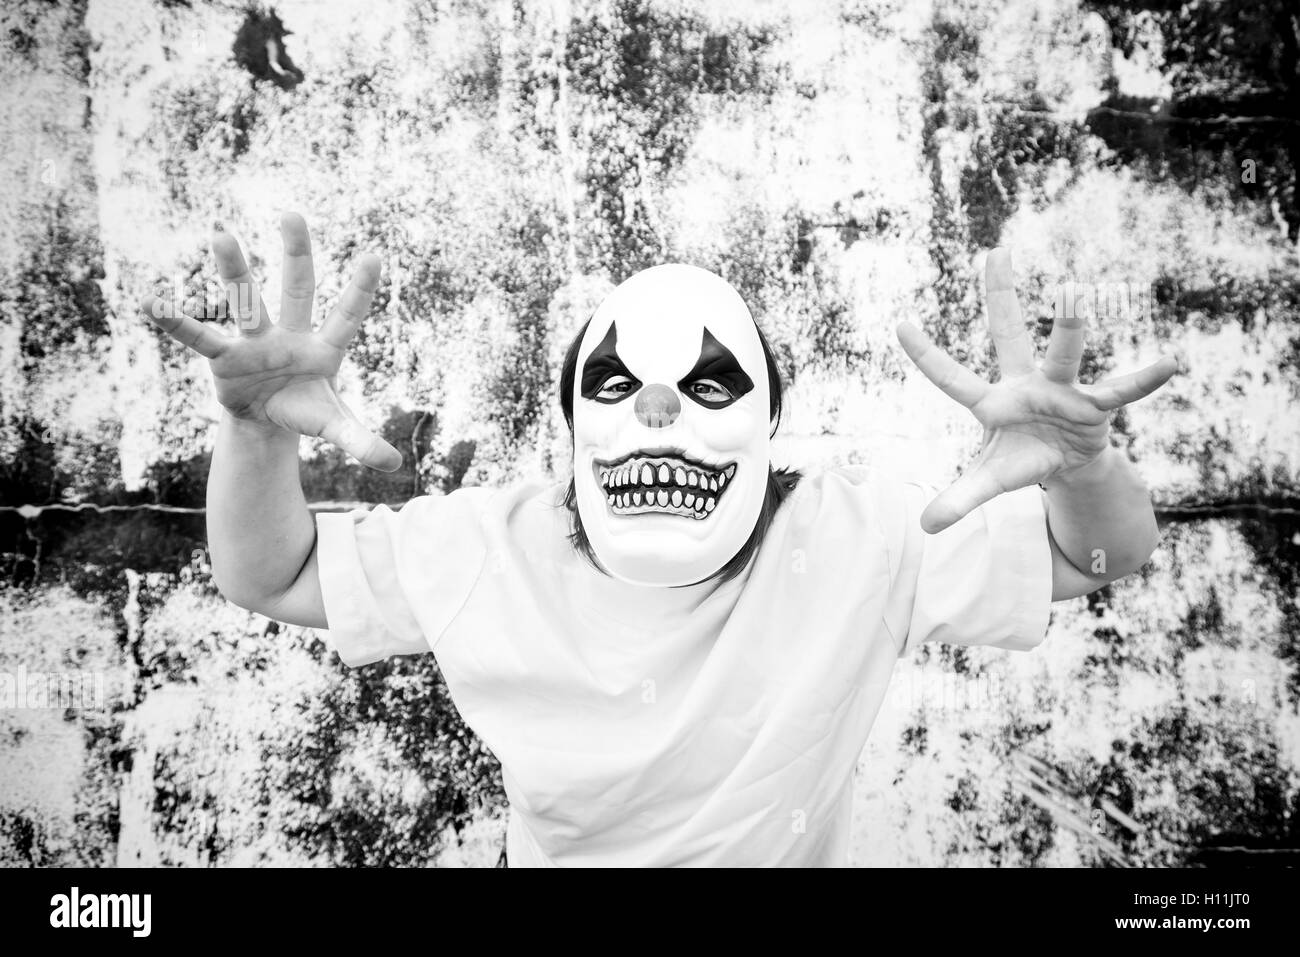 Masque clown fou costume halloween et la peur Banque D'Images